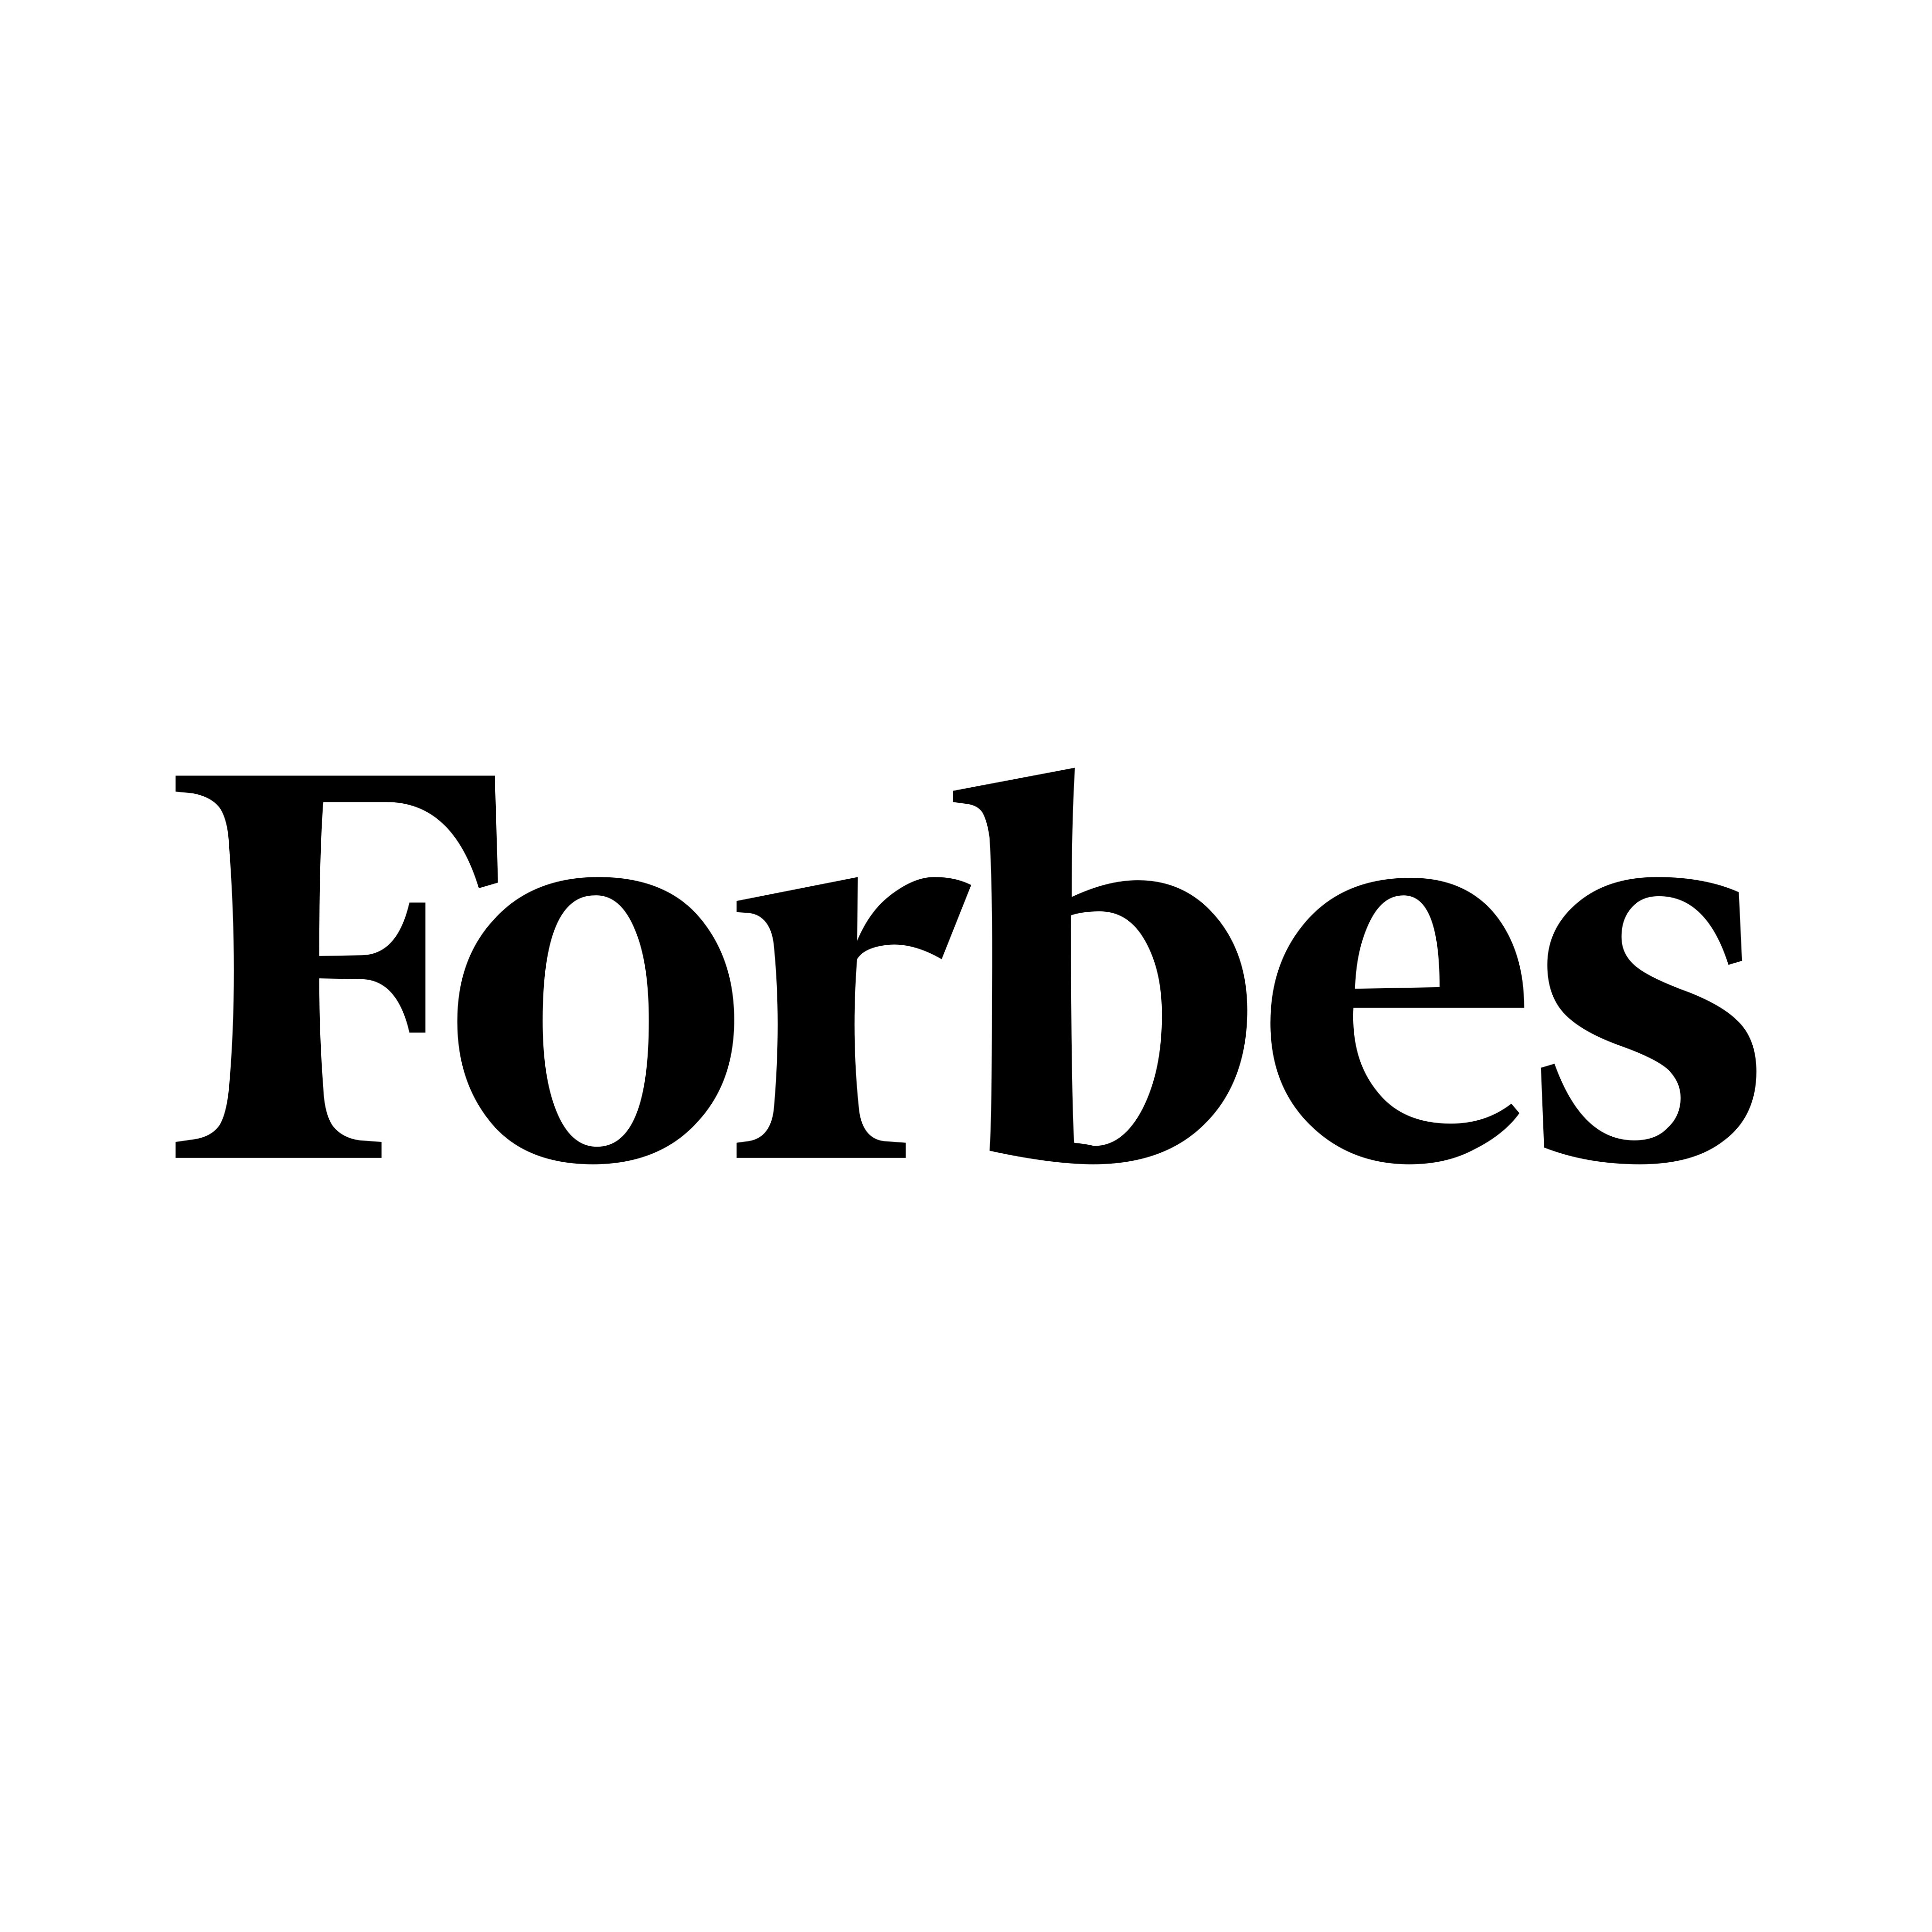 Логотип Forbes - PNG и вектор - Скачать логотип